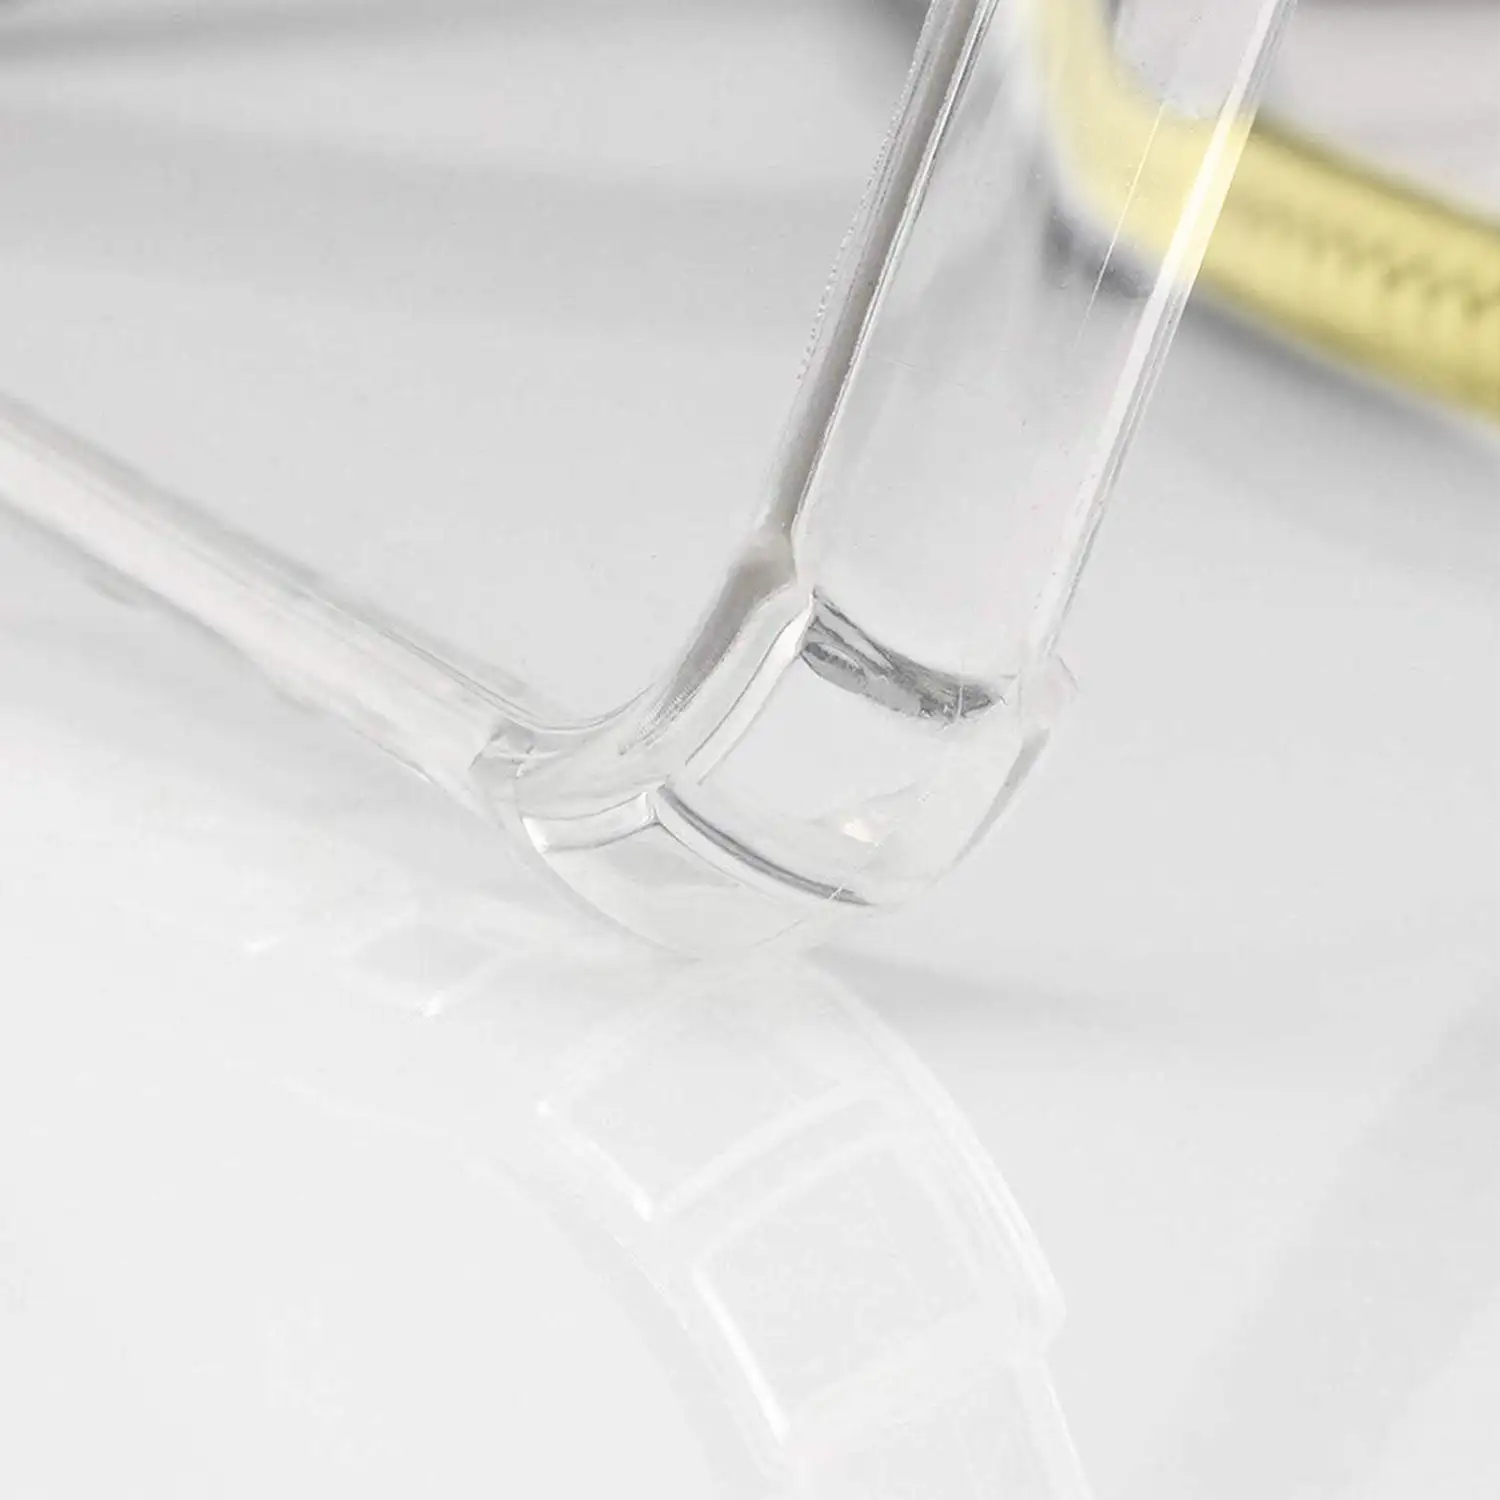 Carcasa transparente iPhone 11 Pro con colgante de nylon. Accesorio de moda, ajuste perfecto y máxima protección